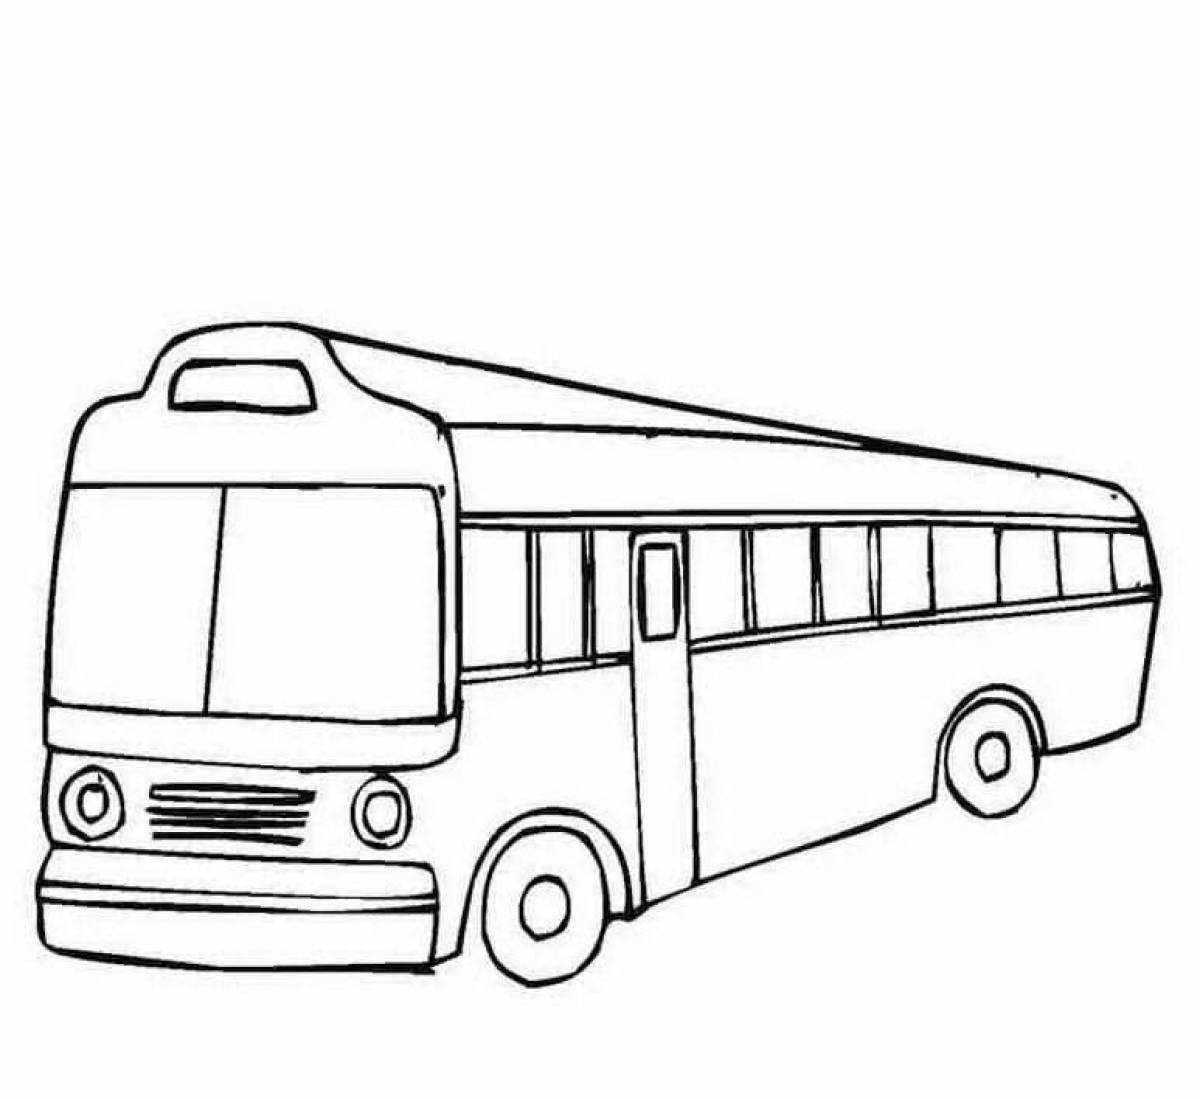 Раскраска а4 автобус двухэтажный на весь лист